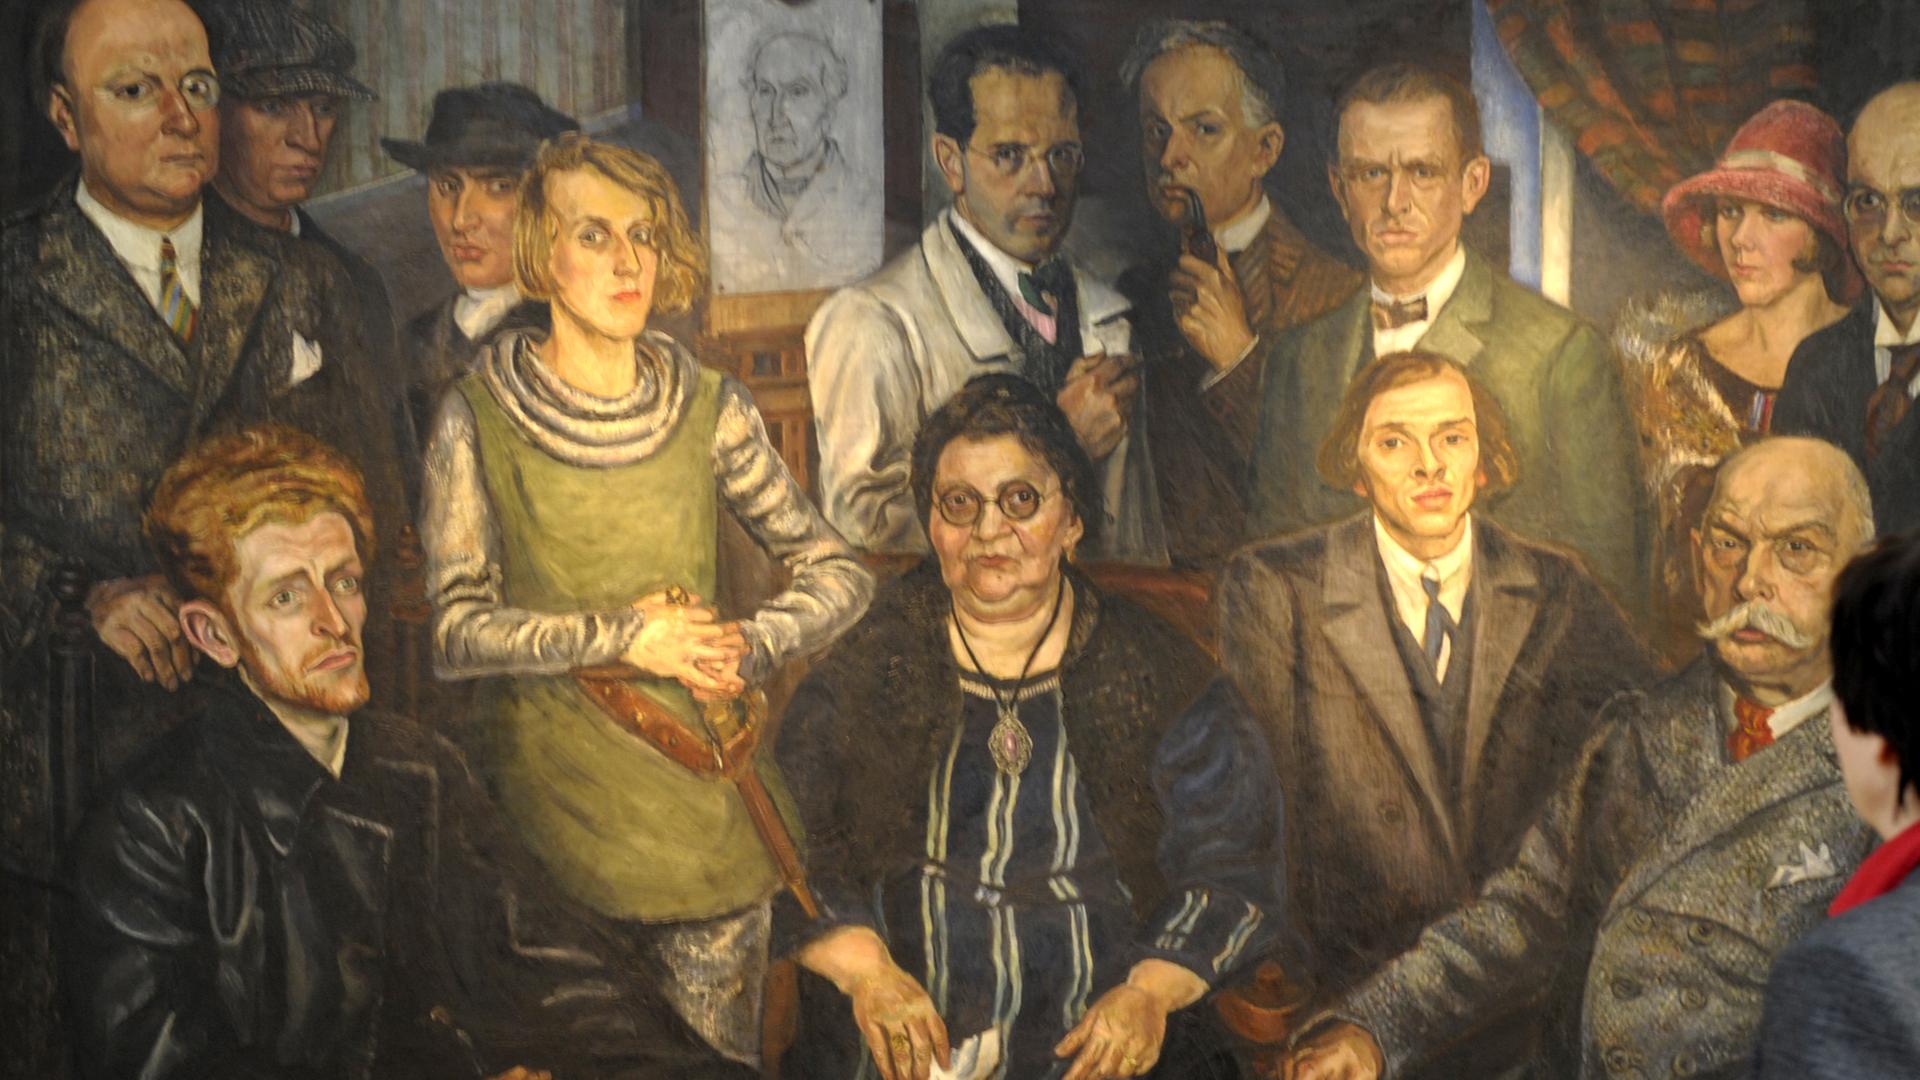 Das Gemälde von Arthur Kaufmann zeigt Johanna Ey, auch genannt "Mutter Ey", im Kreise der Künstergruppe "Das Junge Rheinland".